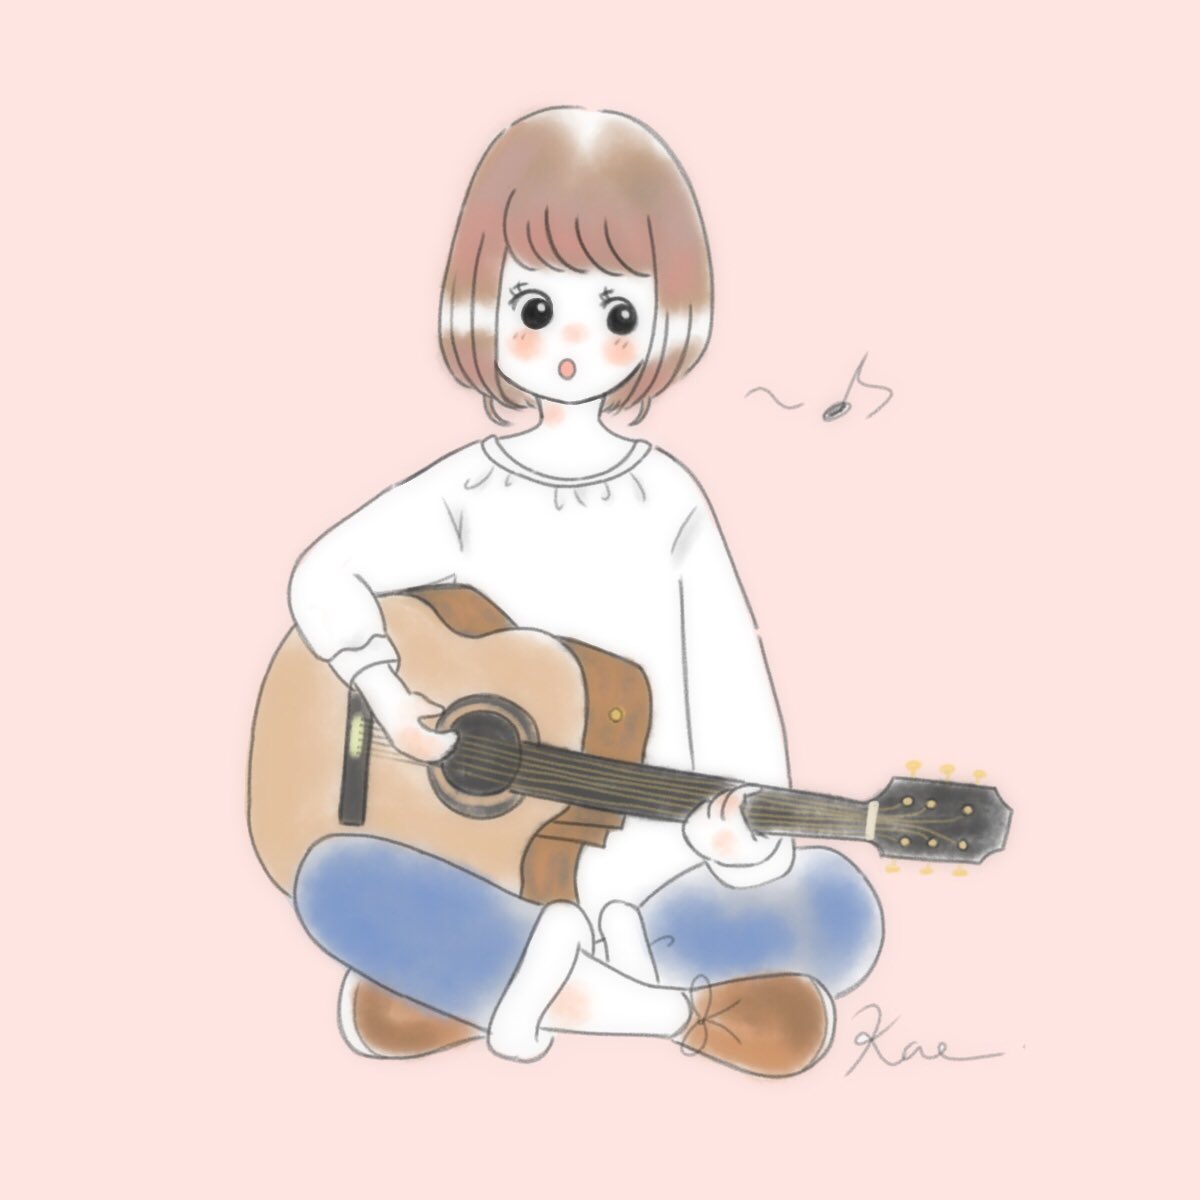 Kaeco ギター弾きgirl 女の子 イラスト Guitar ギター 楽器 イラスト好きな人と繋がりたい お絵描き 絵描き ふんわりイラスト T Co Mho7iaxy0i Twitter